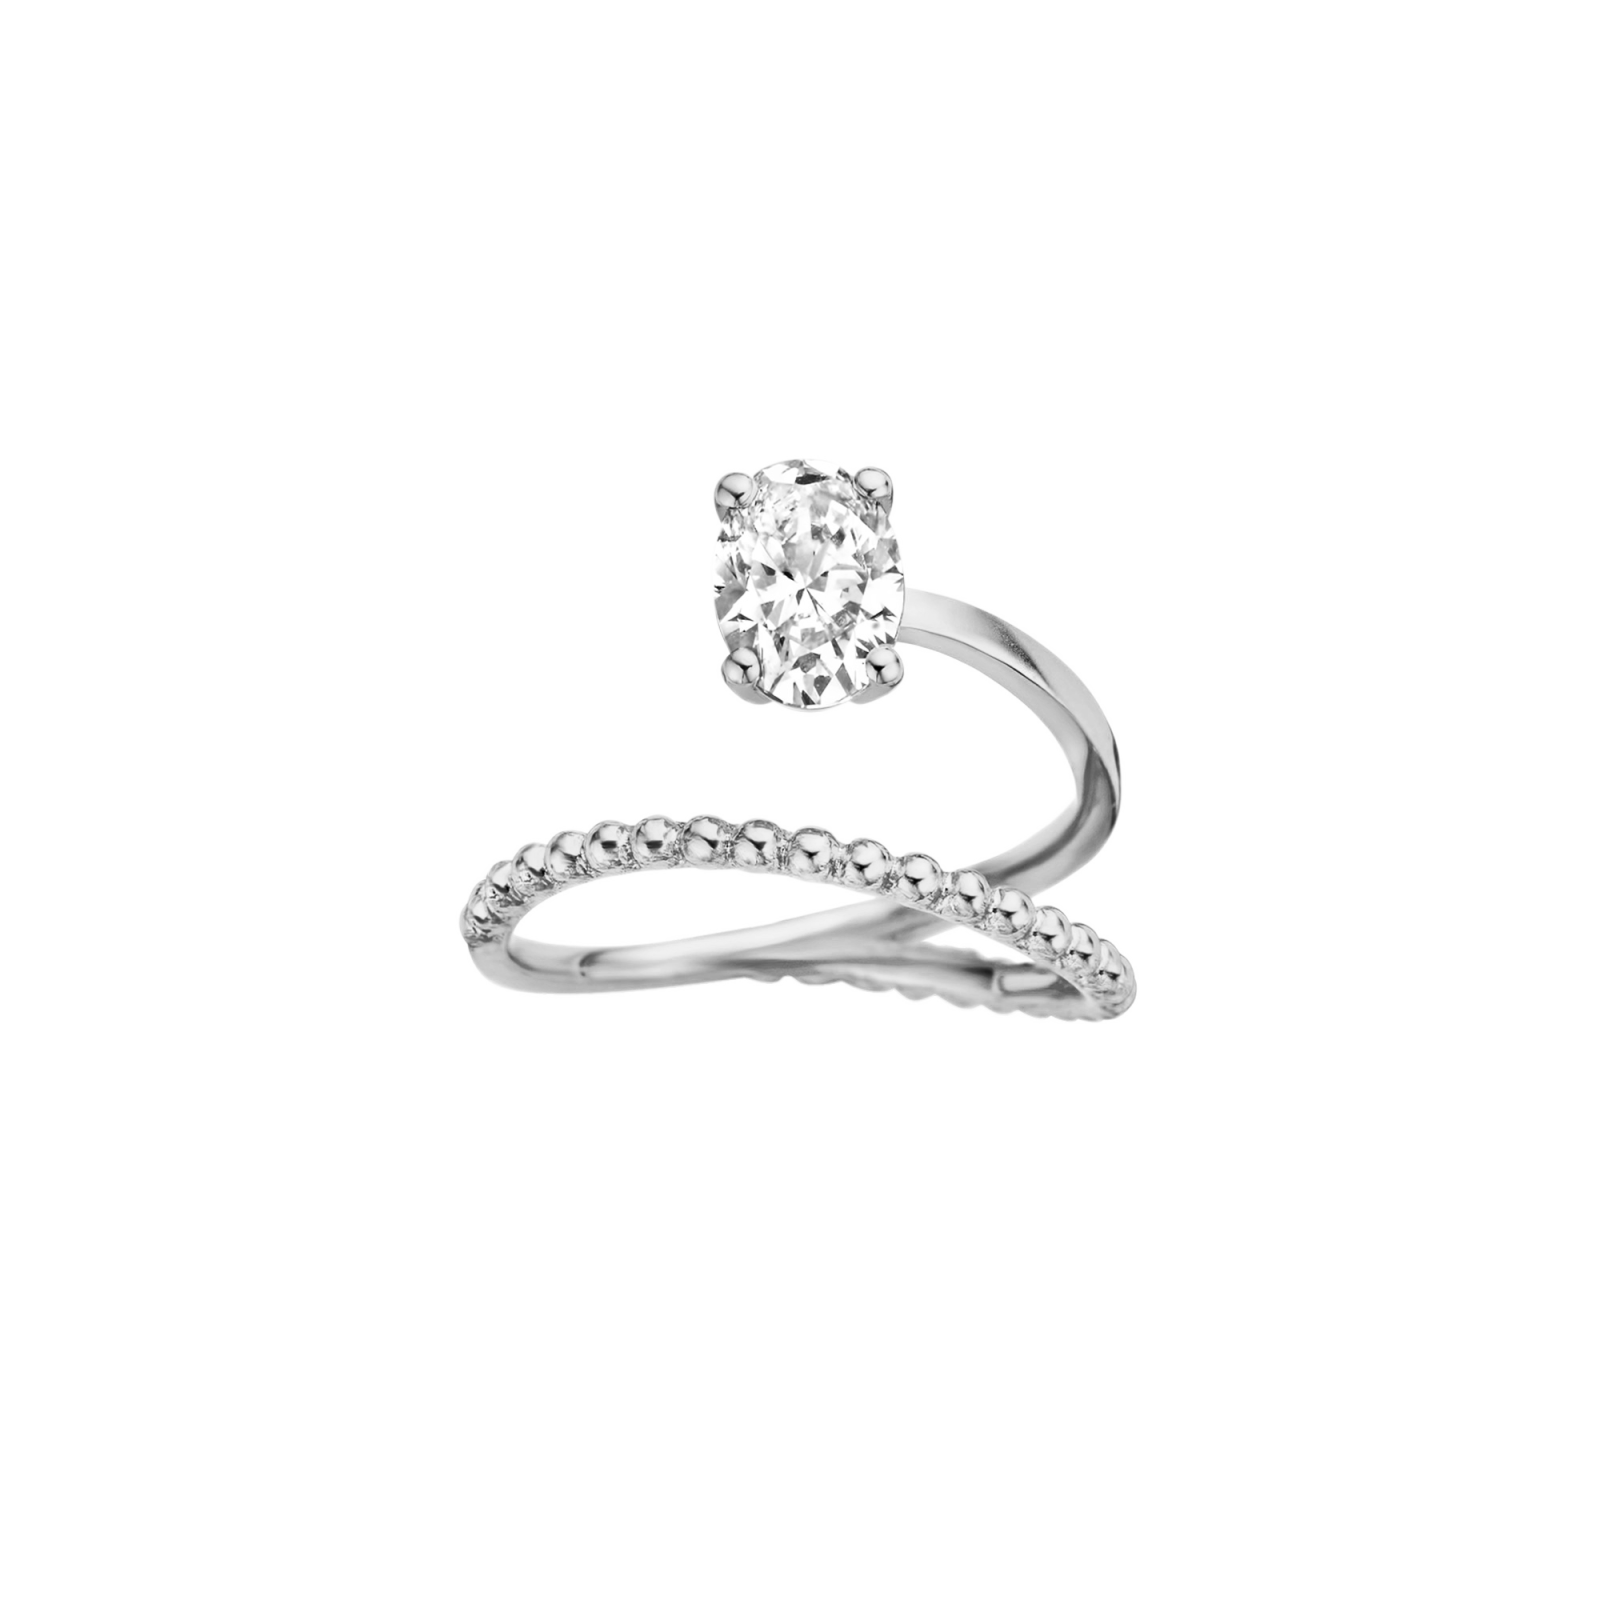 Bille engagement ring packshot - white gold